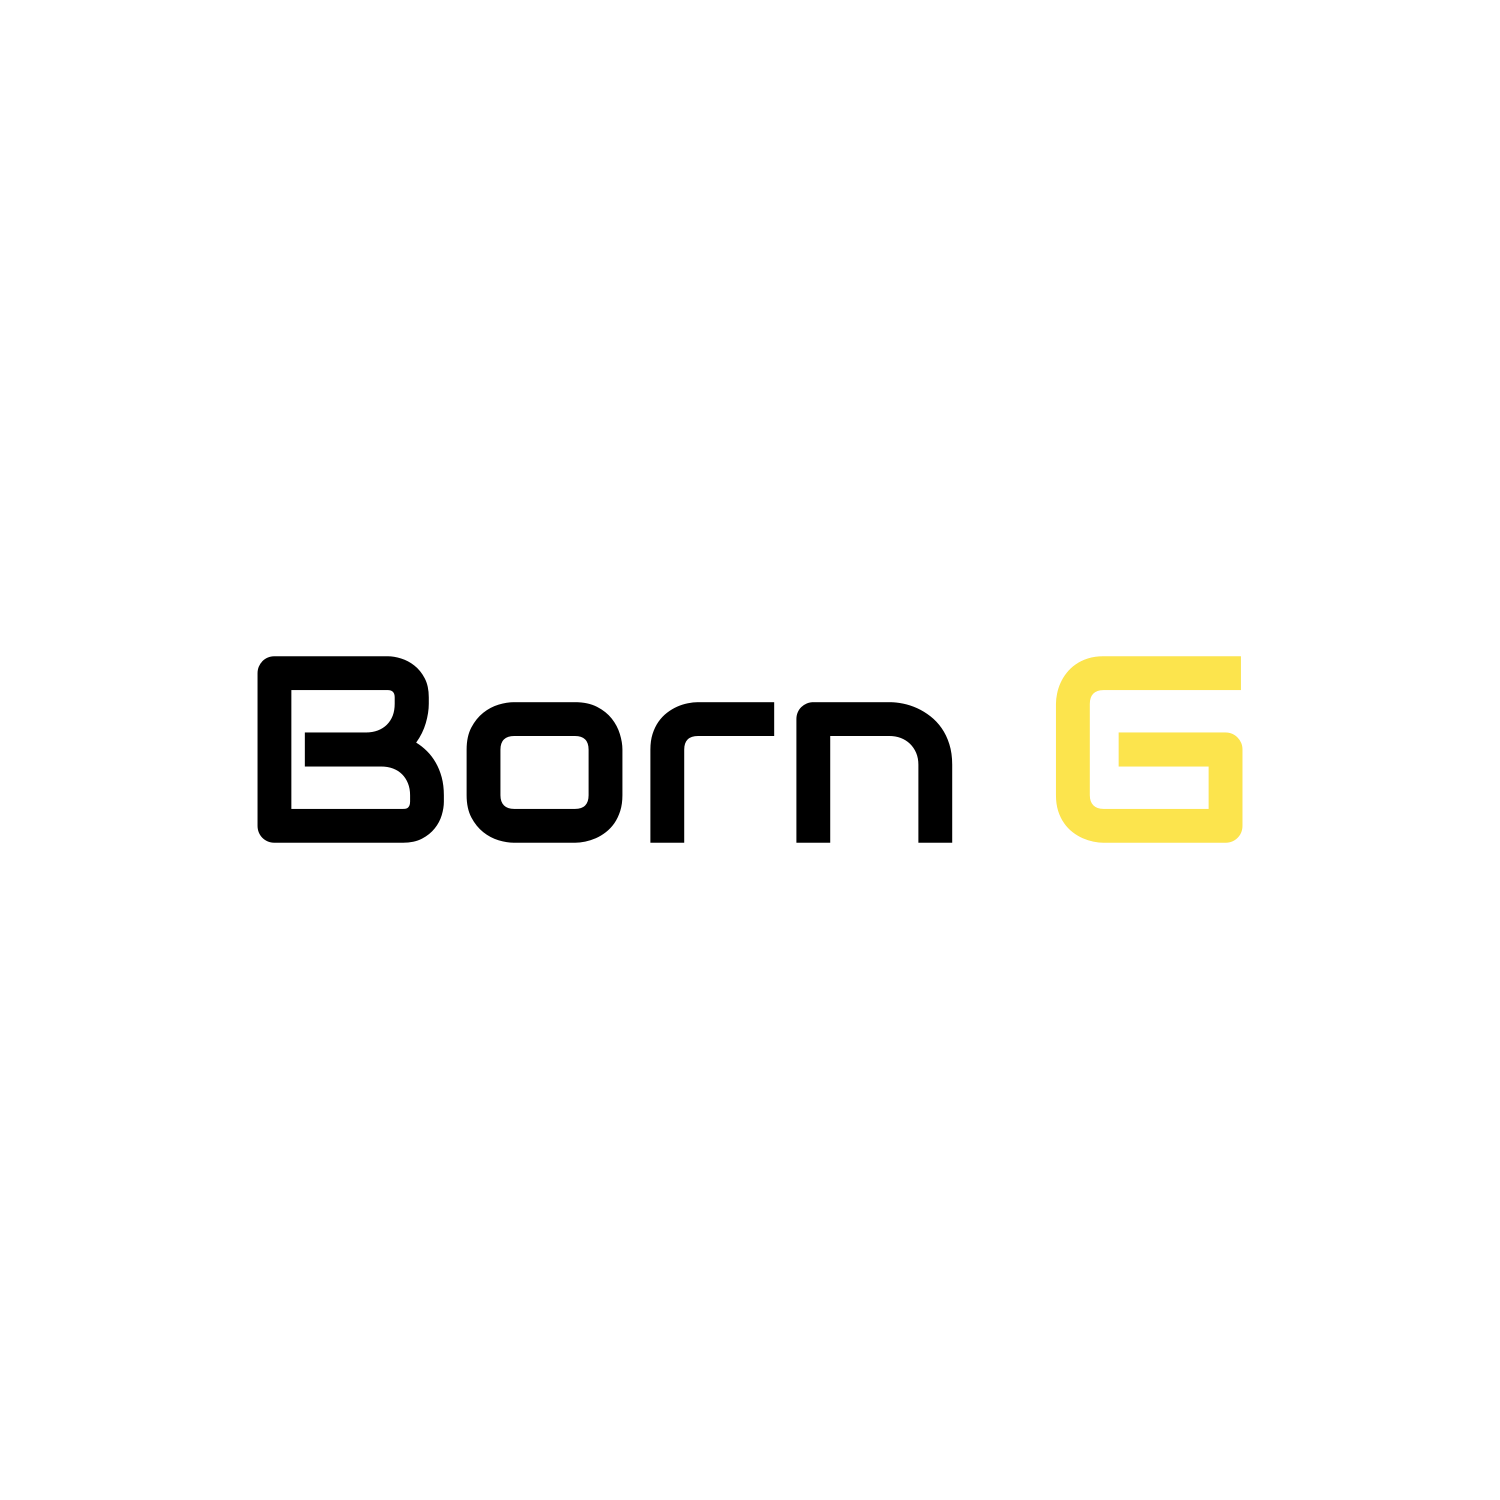 borng logo